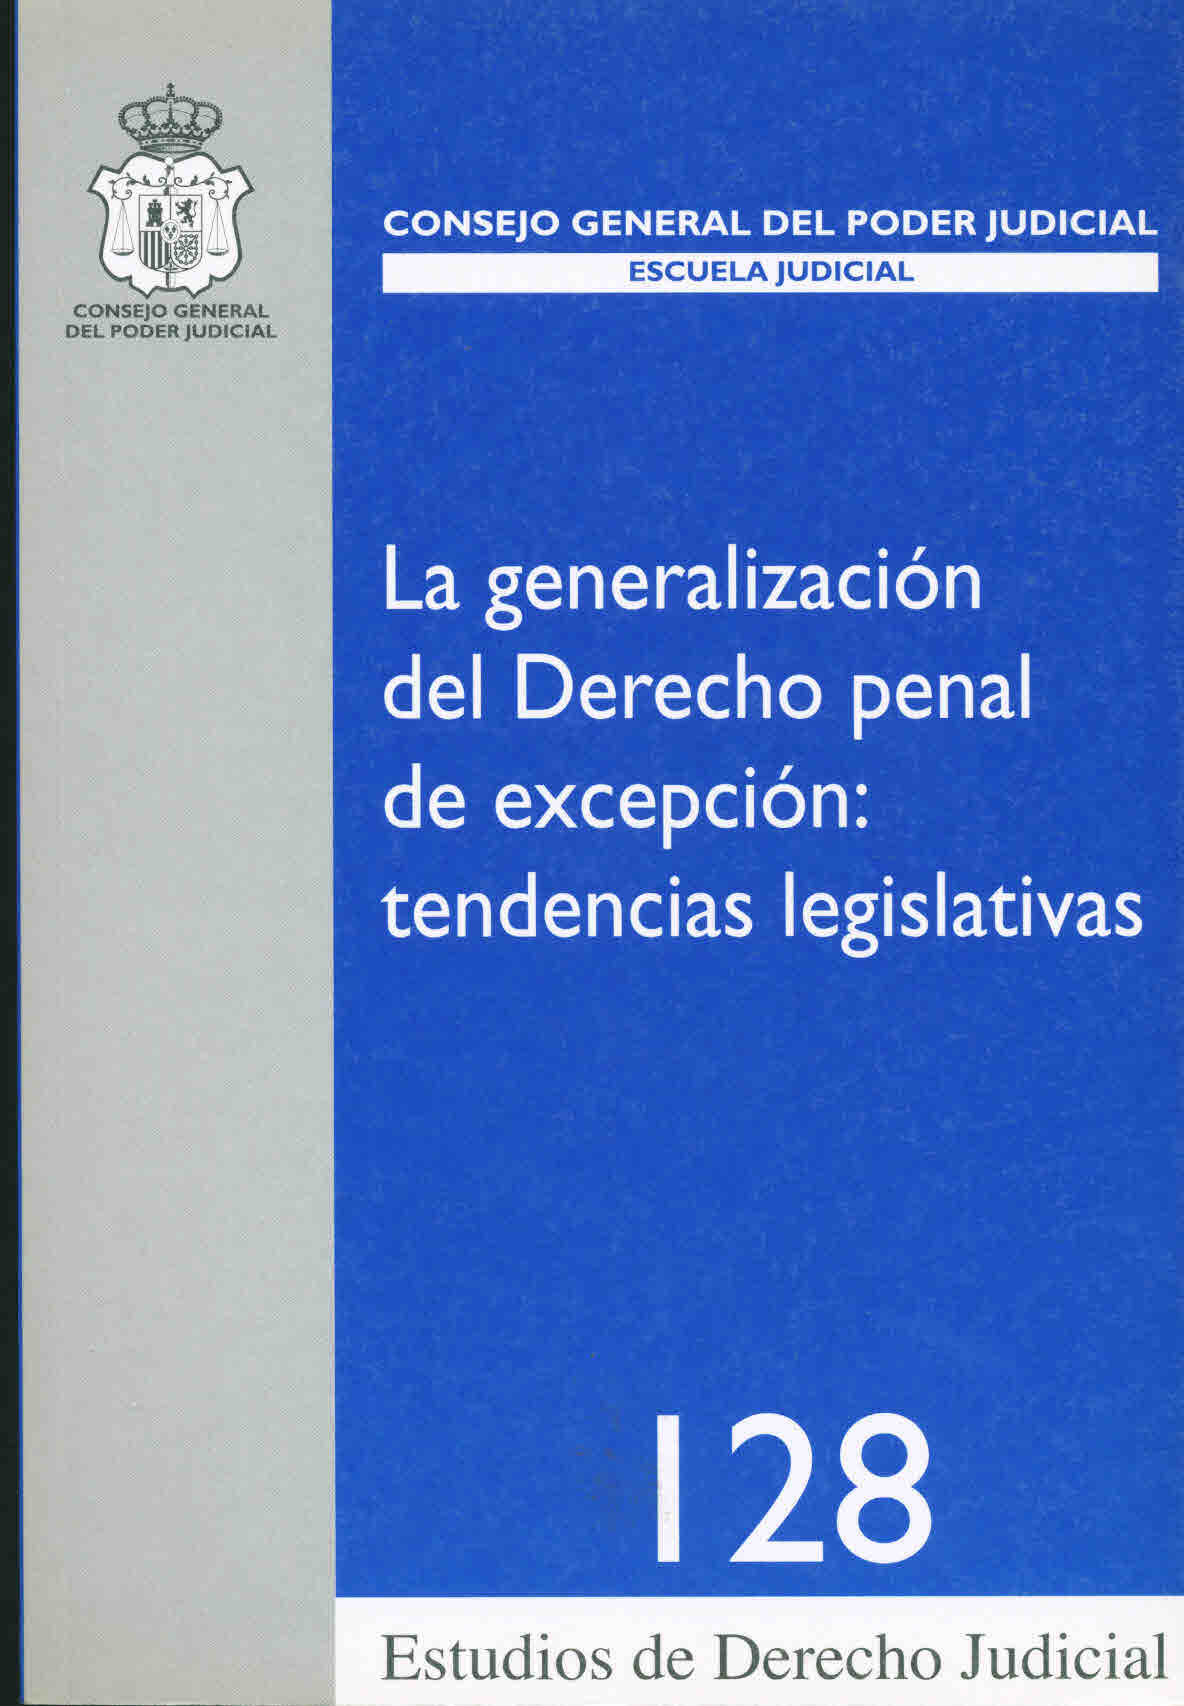 La generalización del derecho penal de excepción: tendencias legislativas